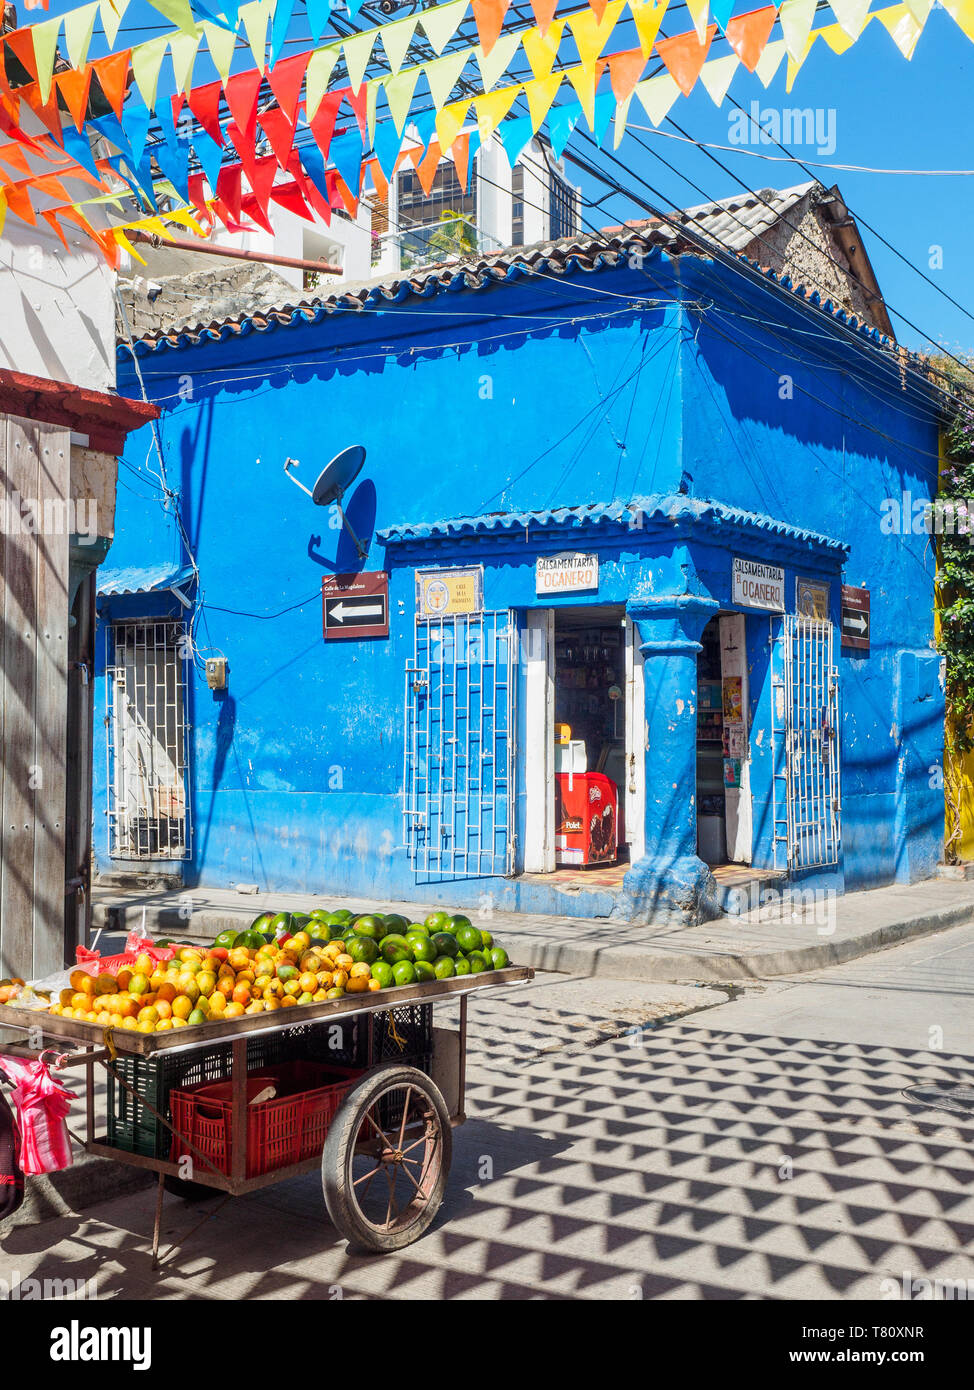 Drapeaux colorés, bâtiment bleu, et des fruits panier sur un coin de rue de Getsemani barrio, Carthagène, Colombie, Amérique du Sud Banque D'Images